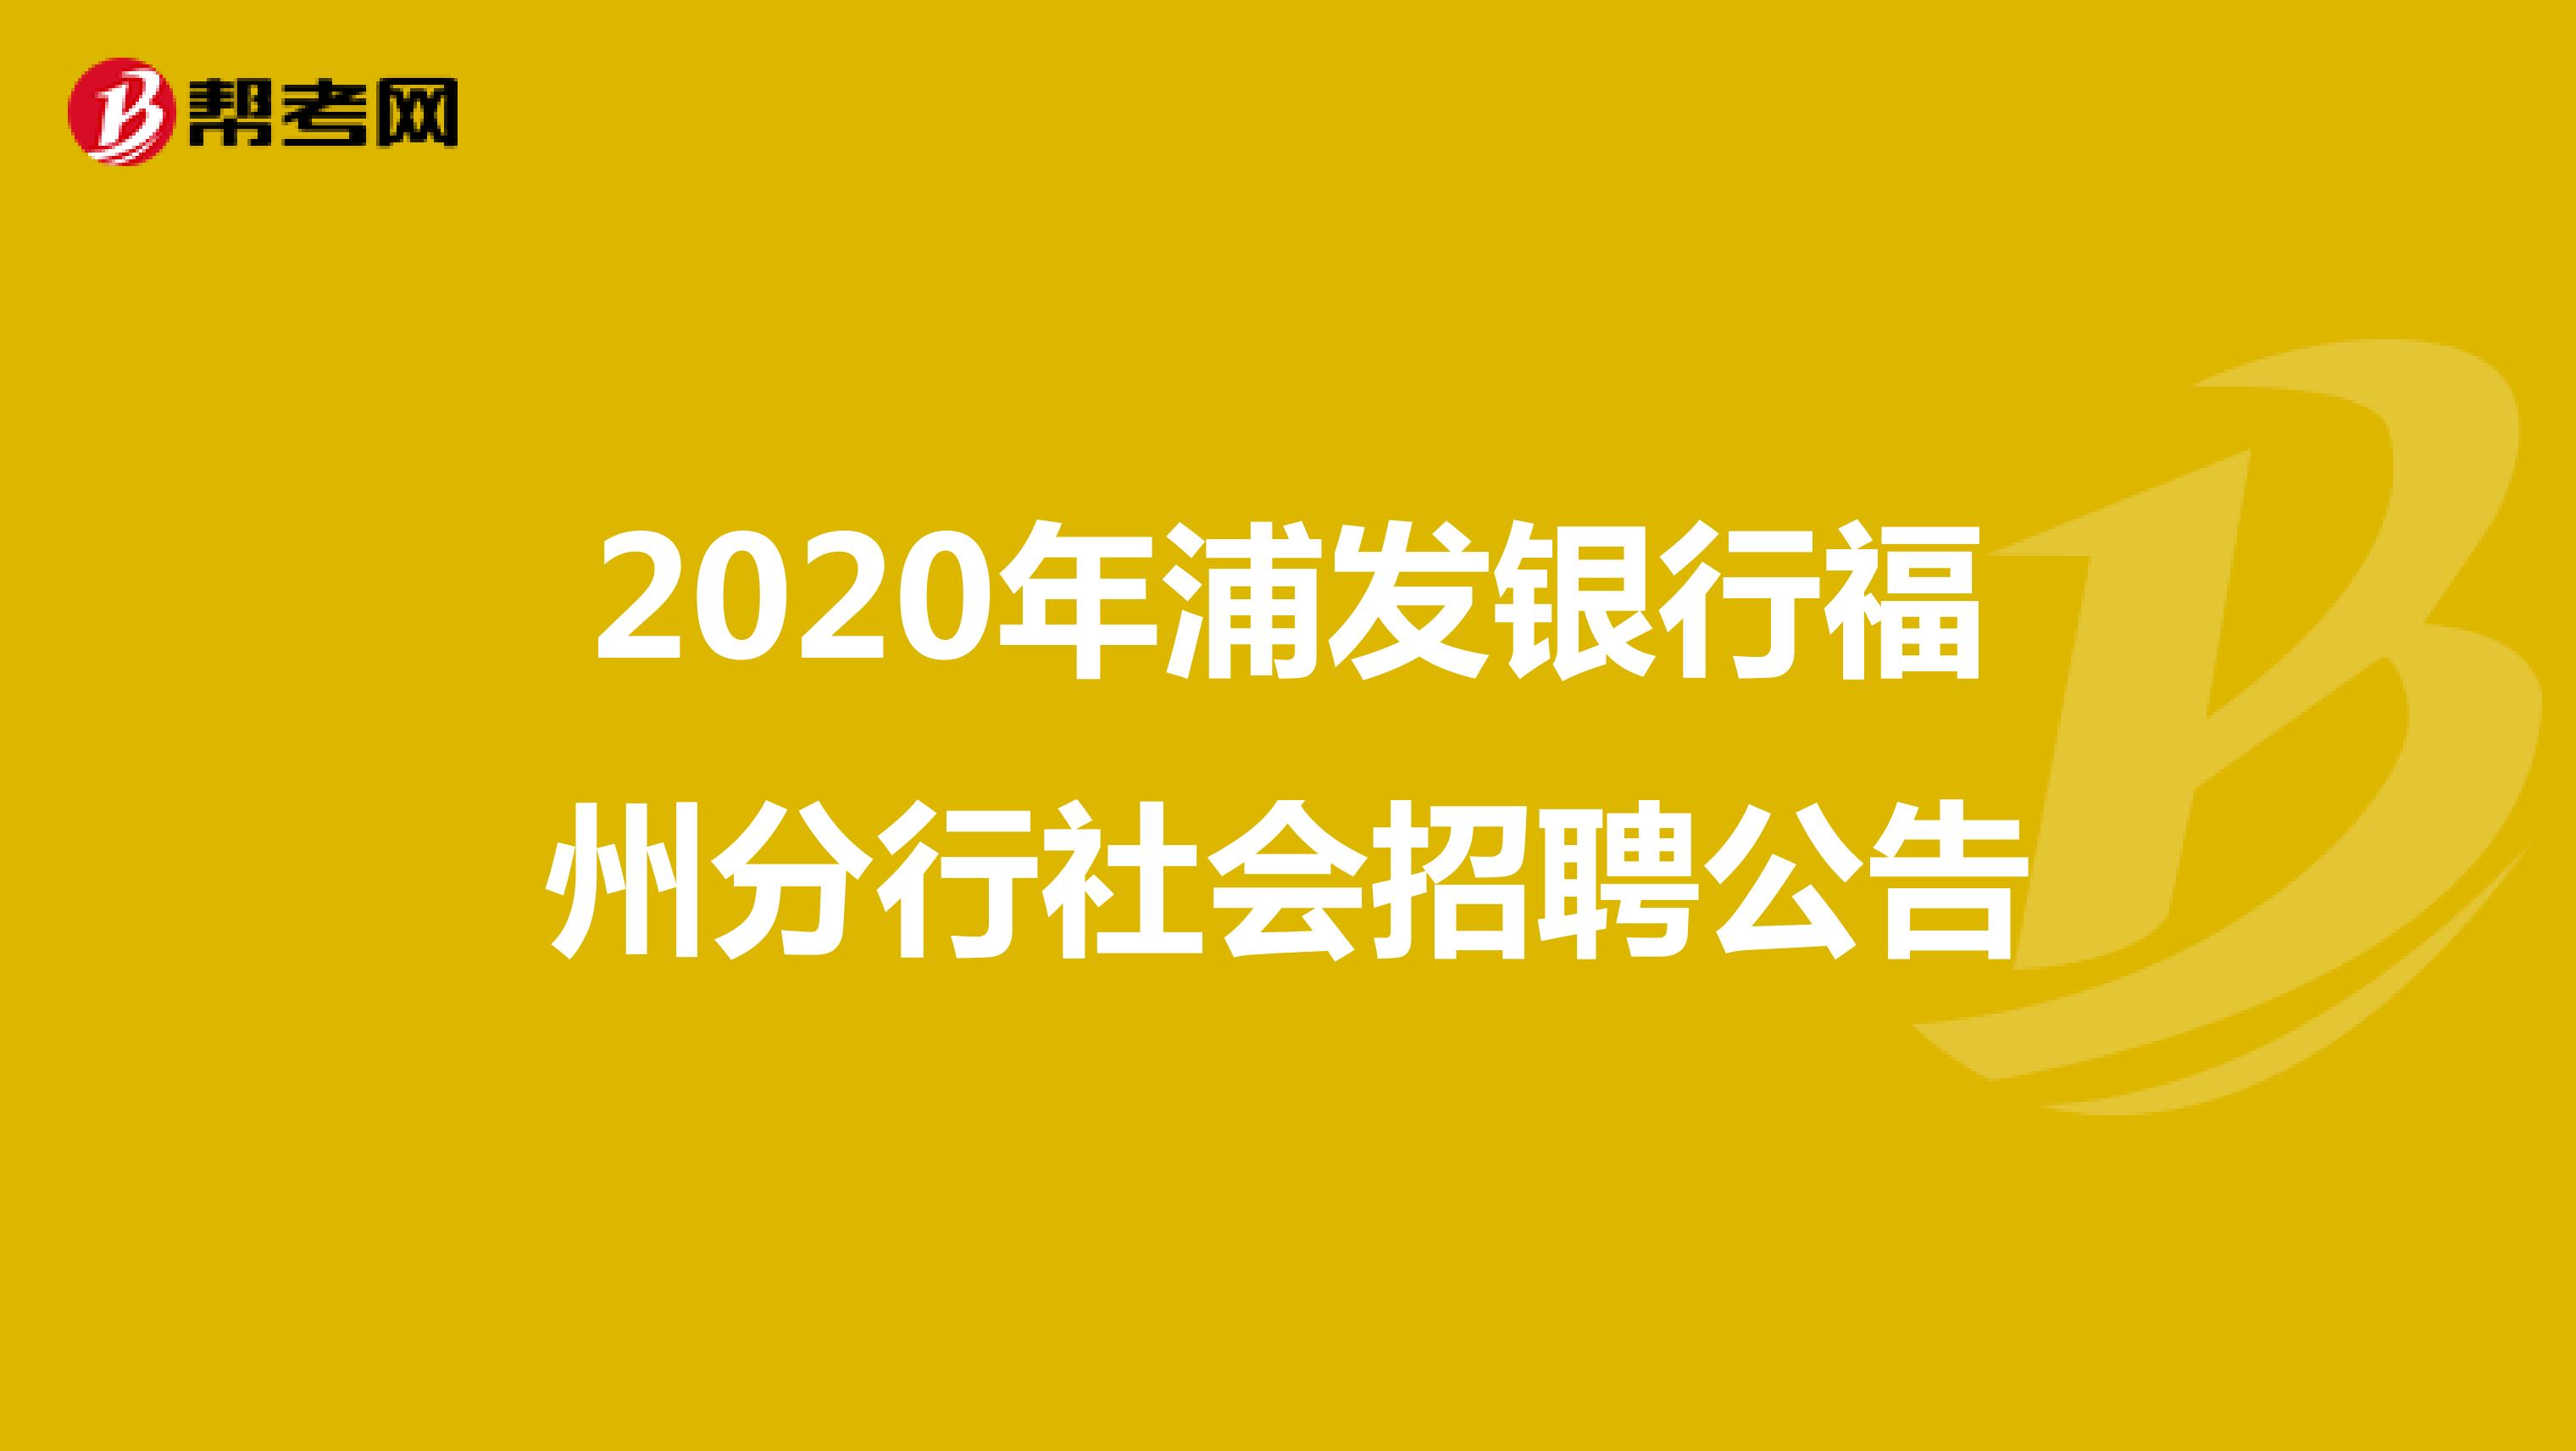 2020年浦发银行福州分行社会招聘公告